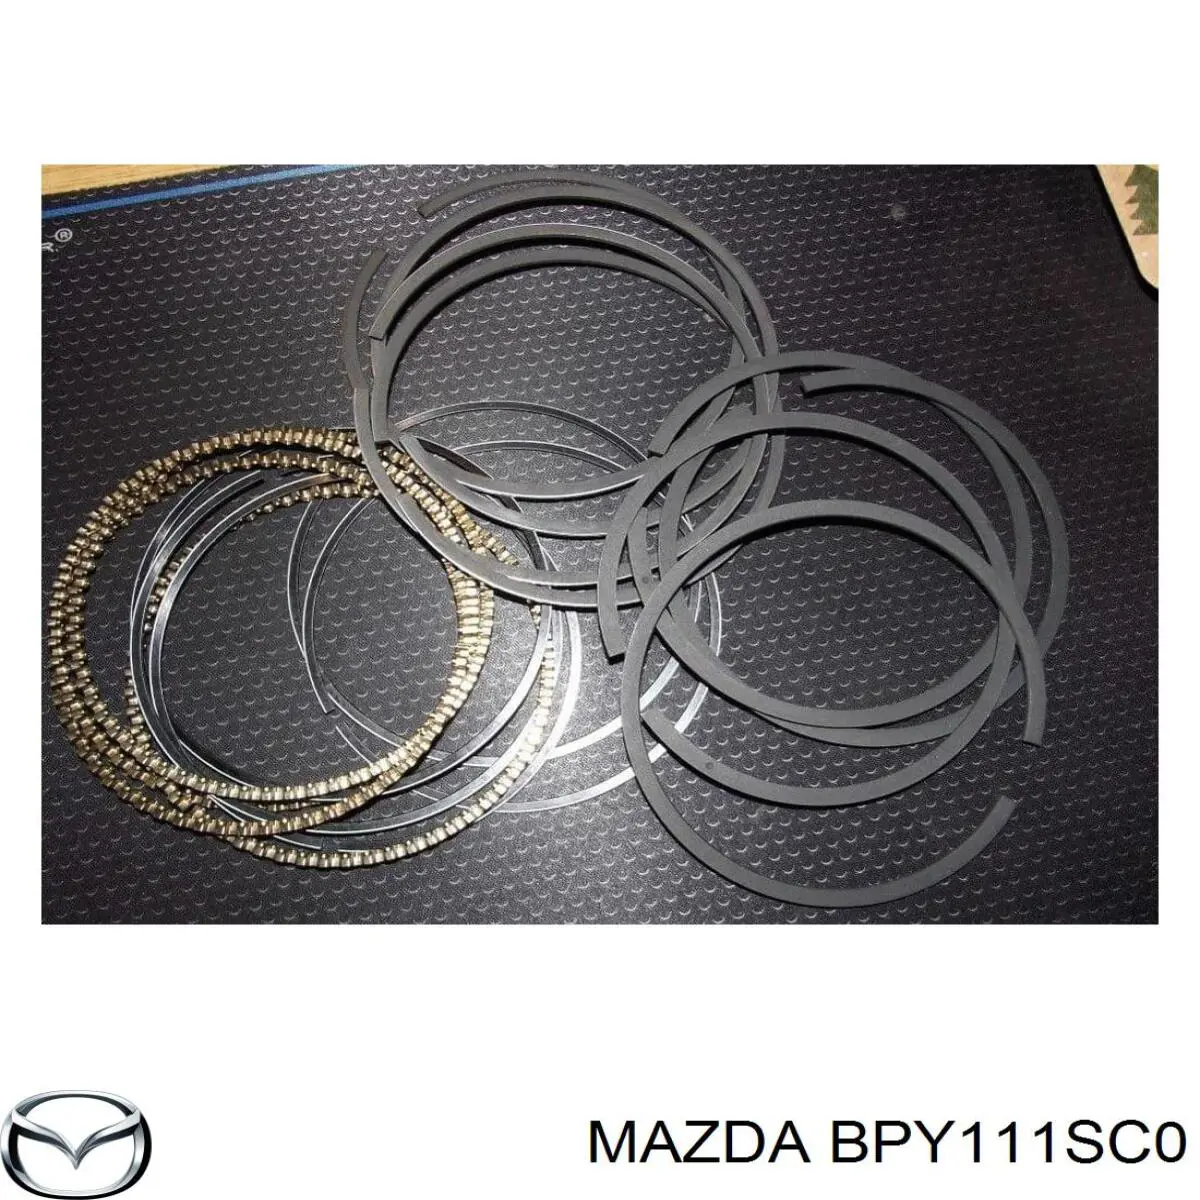 BPY111SC0 Mazda кольца поршневые комплект на мотор, std.